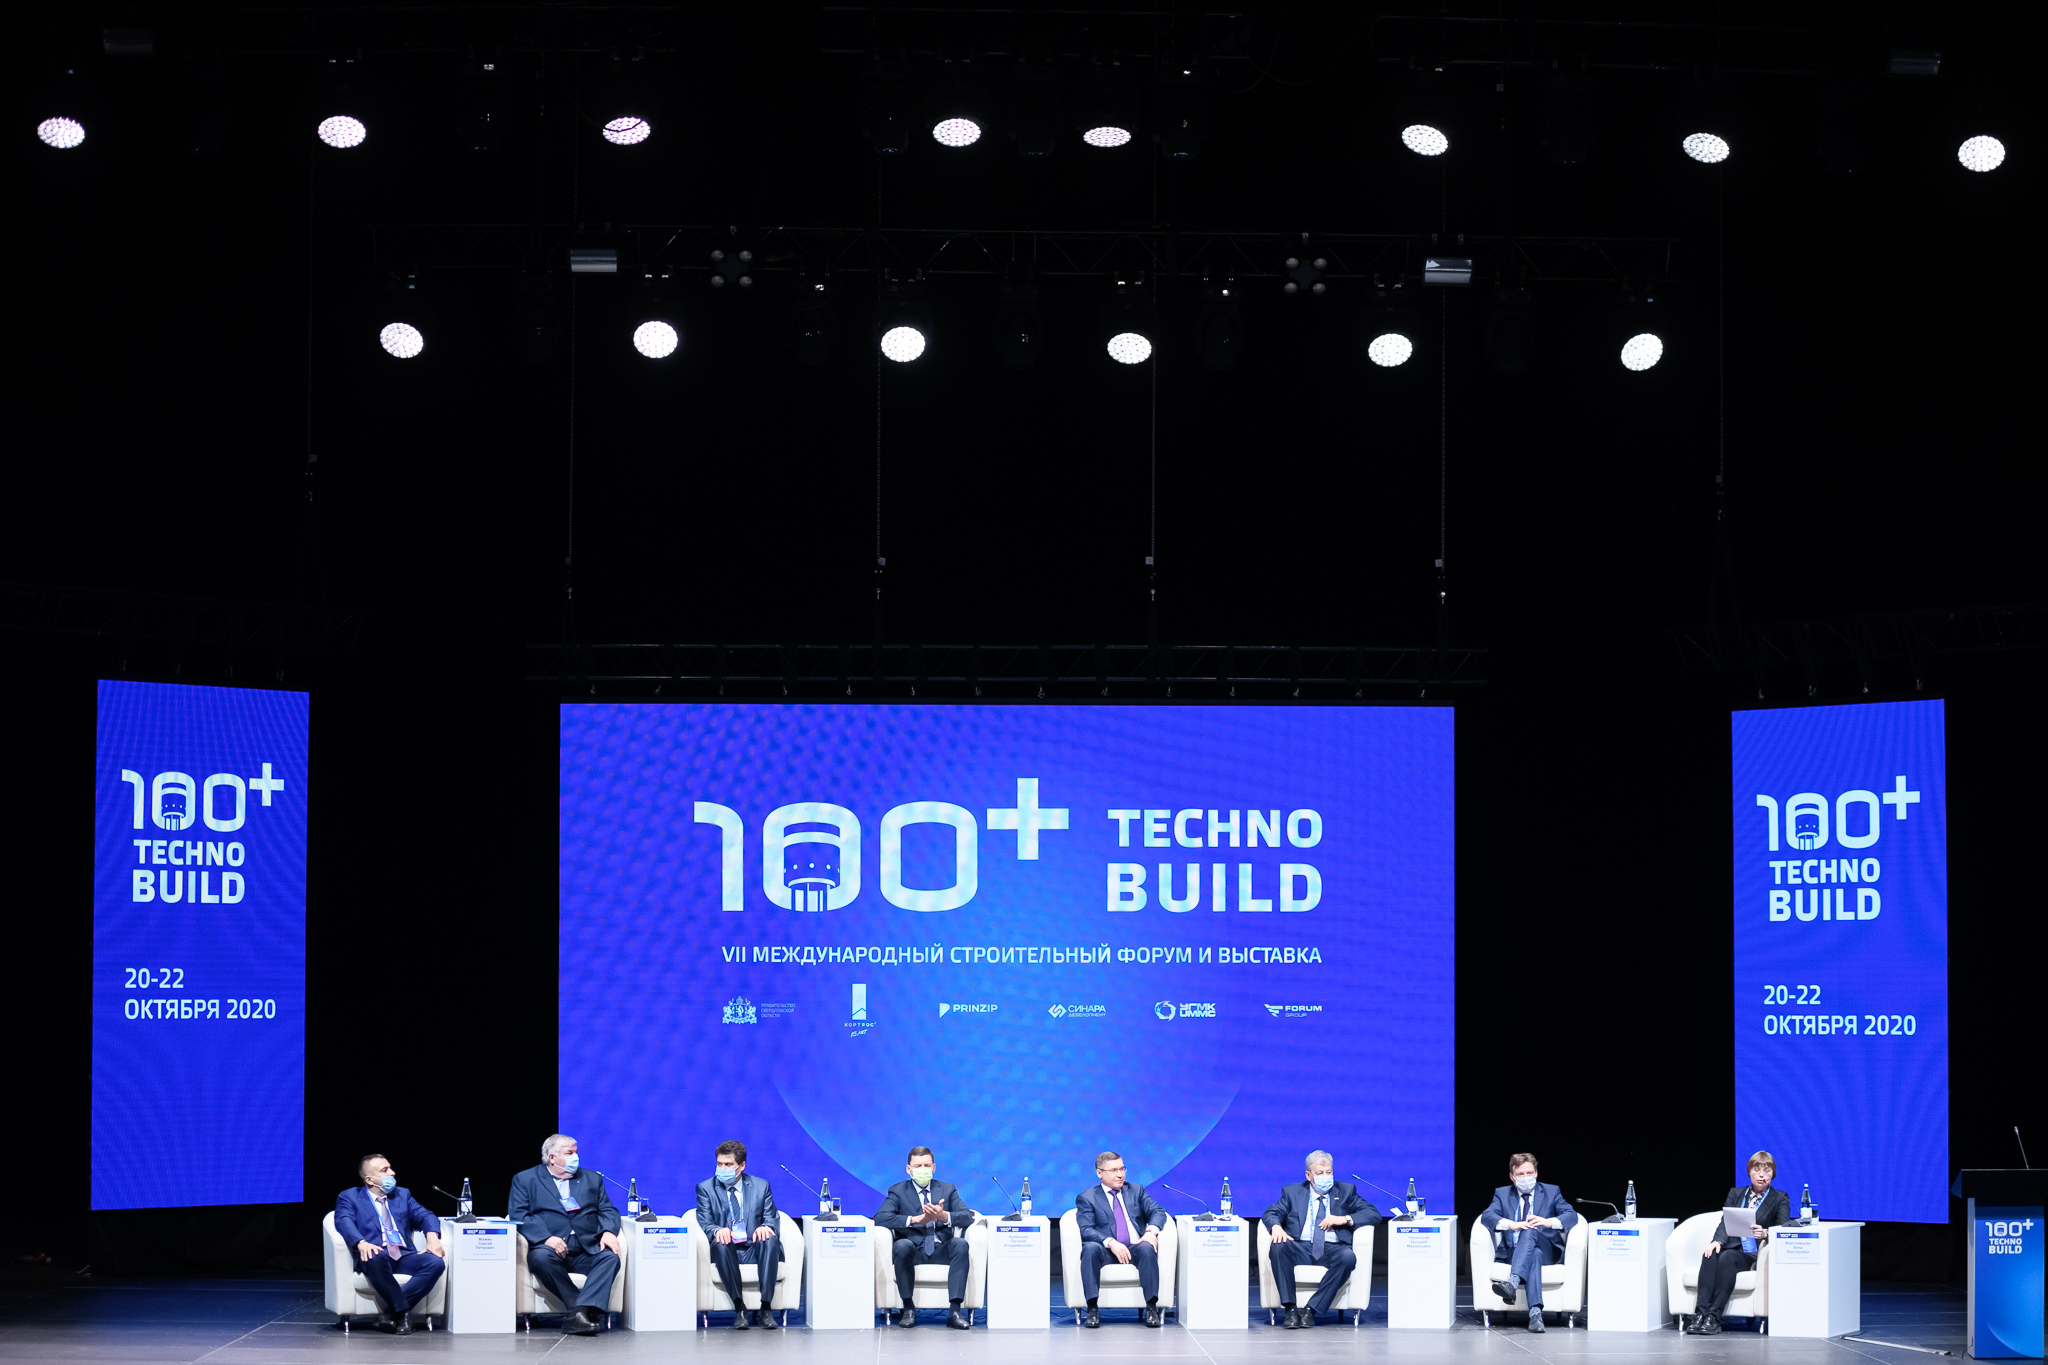 Более 40 соглашений планируется заключить в рамках форума 100+ TechnoBuild в Екатеринбурге